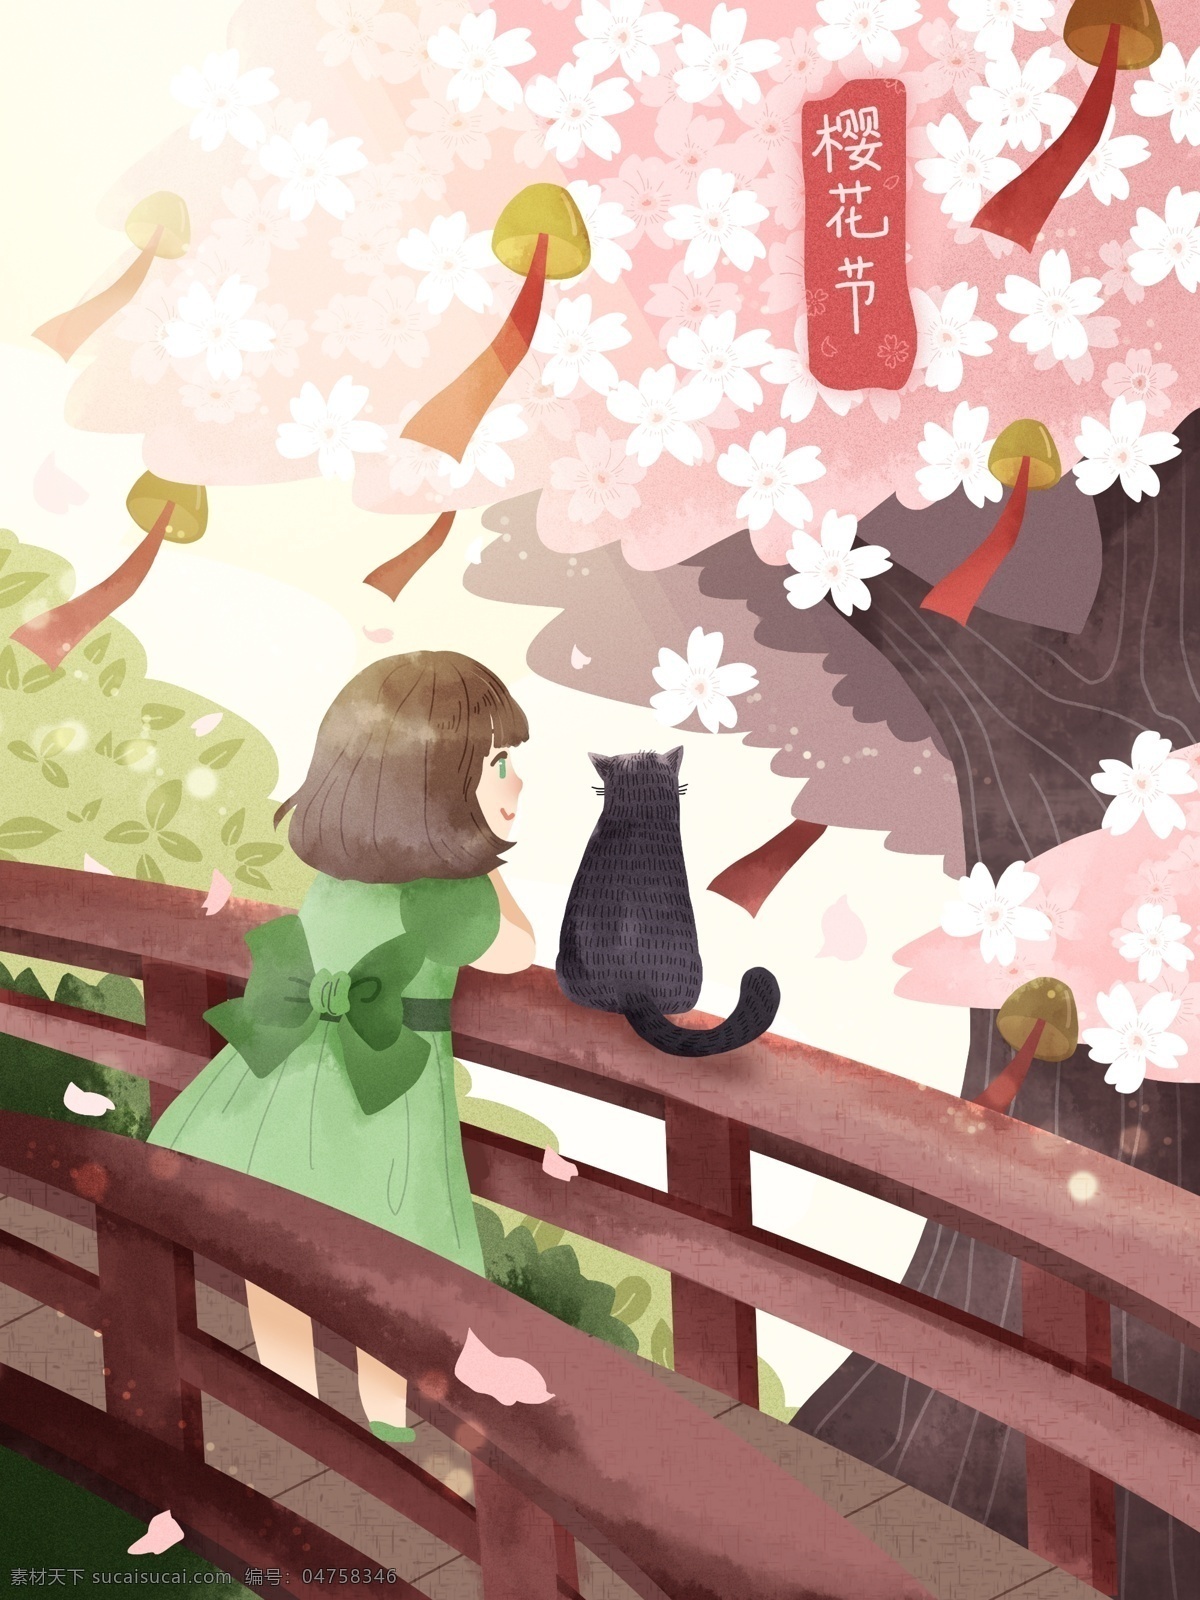 唯美 清新 日本 樱花节 女孩 猫咪 开心 赏 樱 樱花 猫 植物 节日 粉色 铃铛 桥 黑猫 树 治愈 气氛